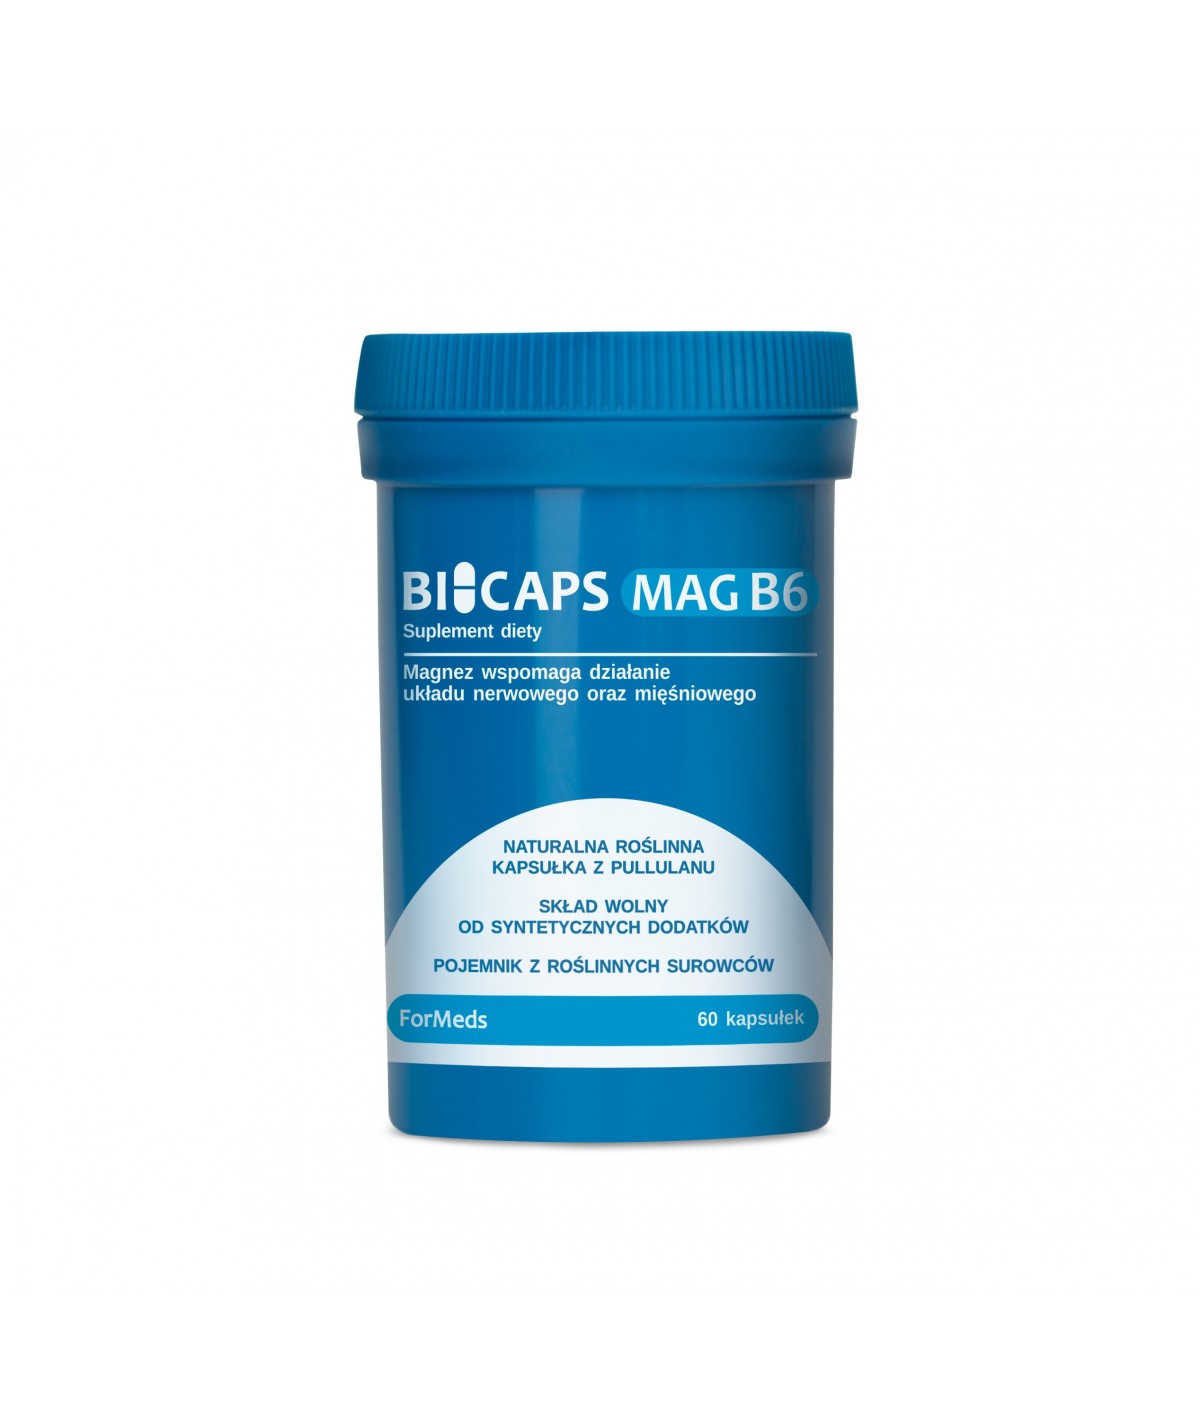 Bicaps Mg B6|Formeds